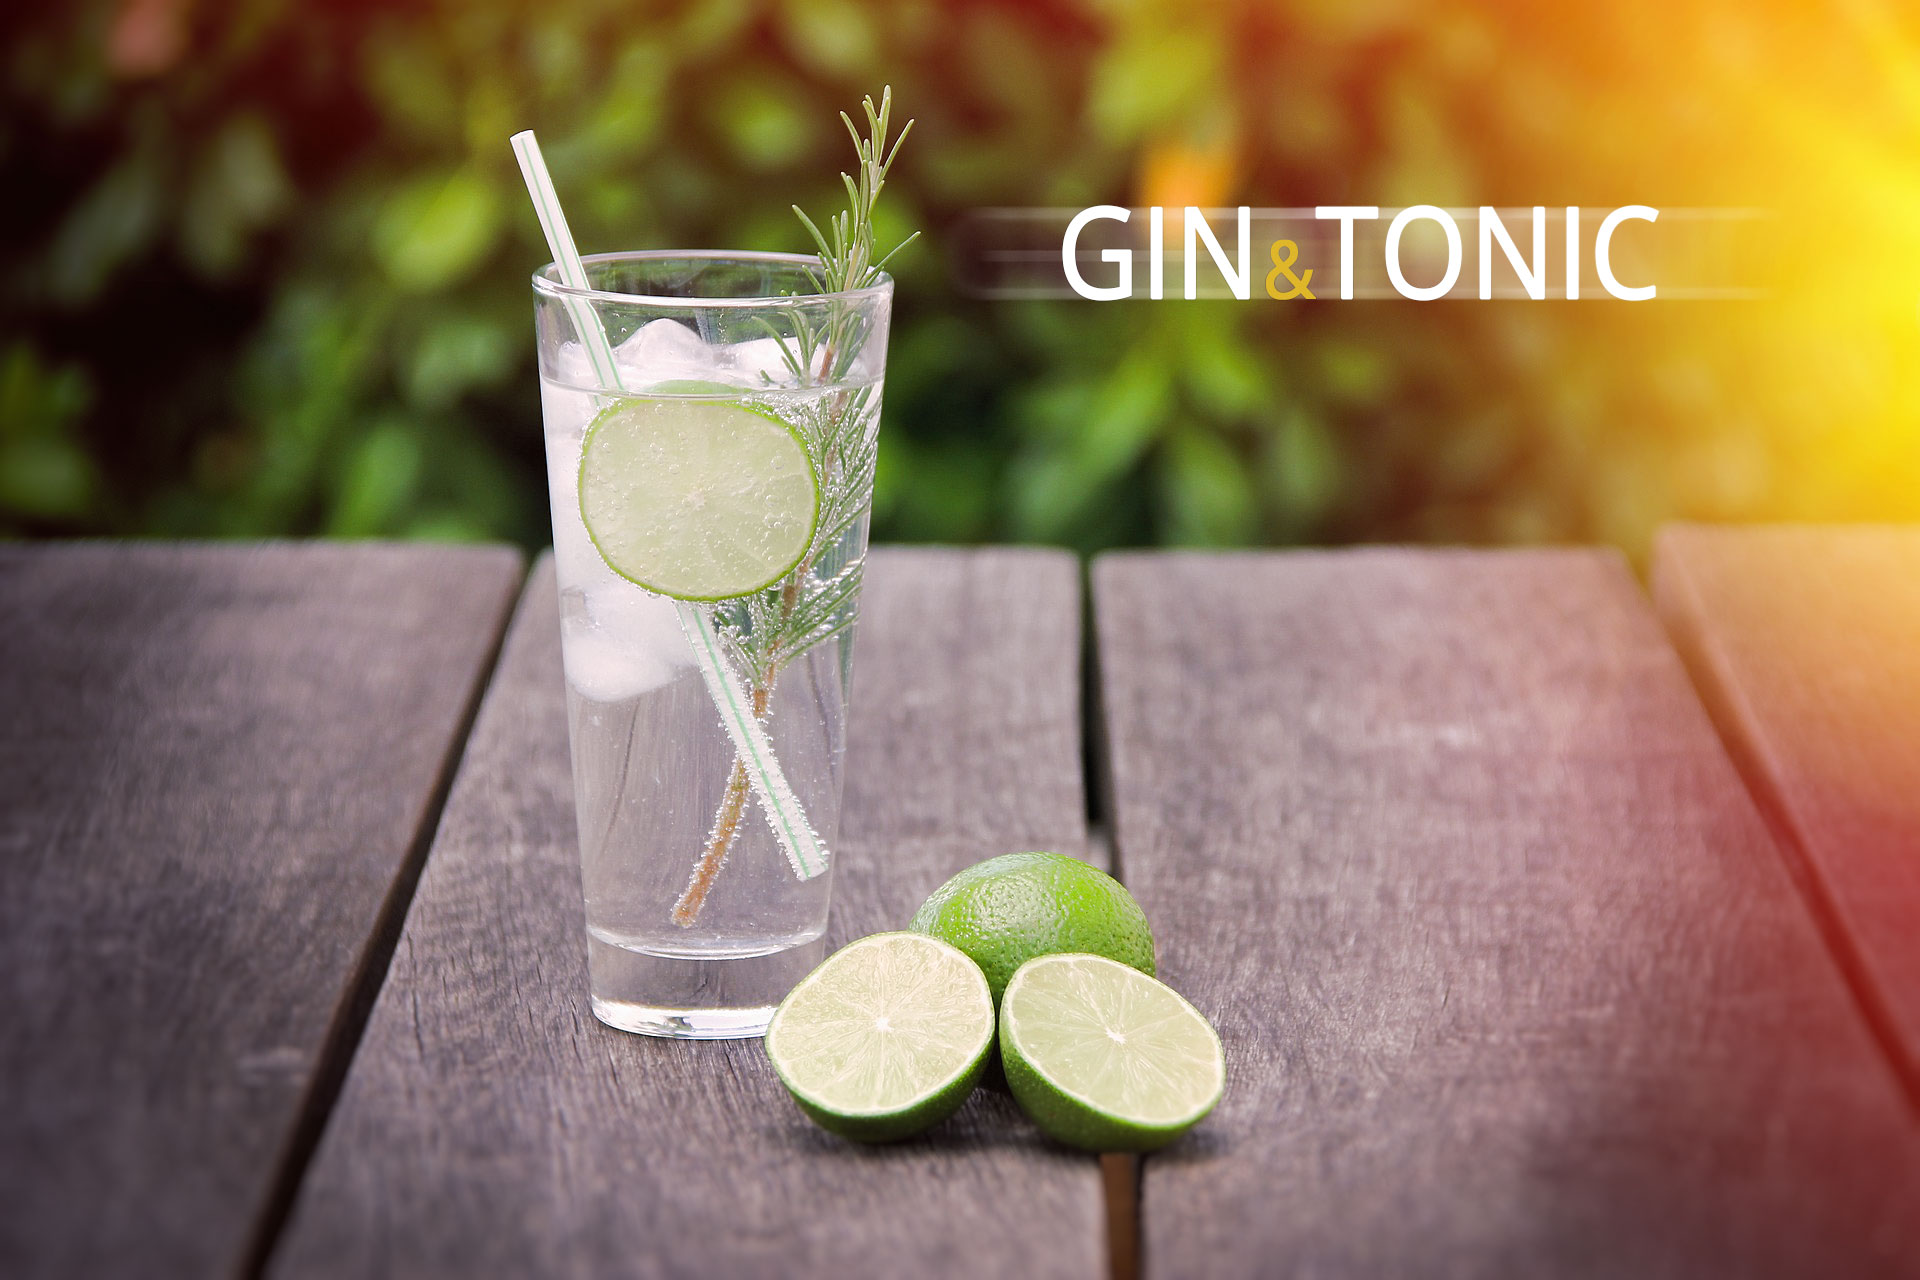 Gin & Tonic - Welches Mischungsverhältnis?